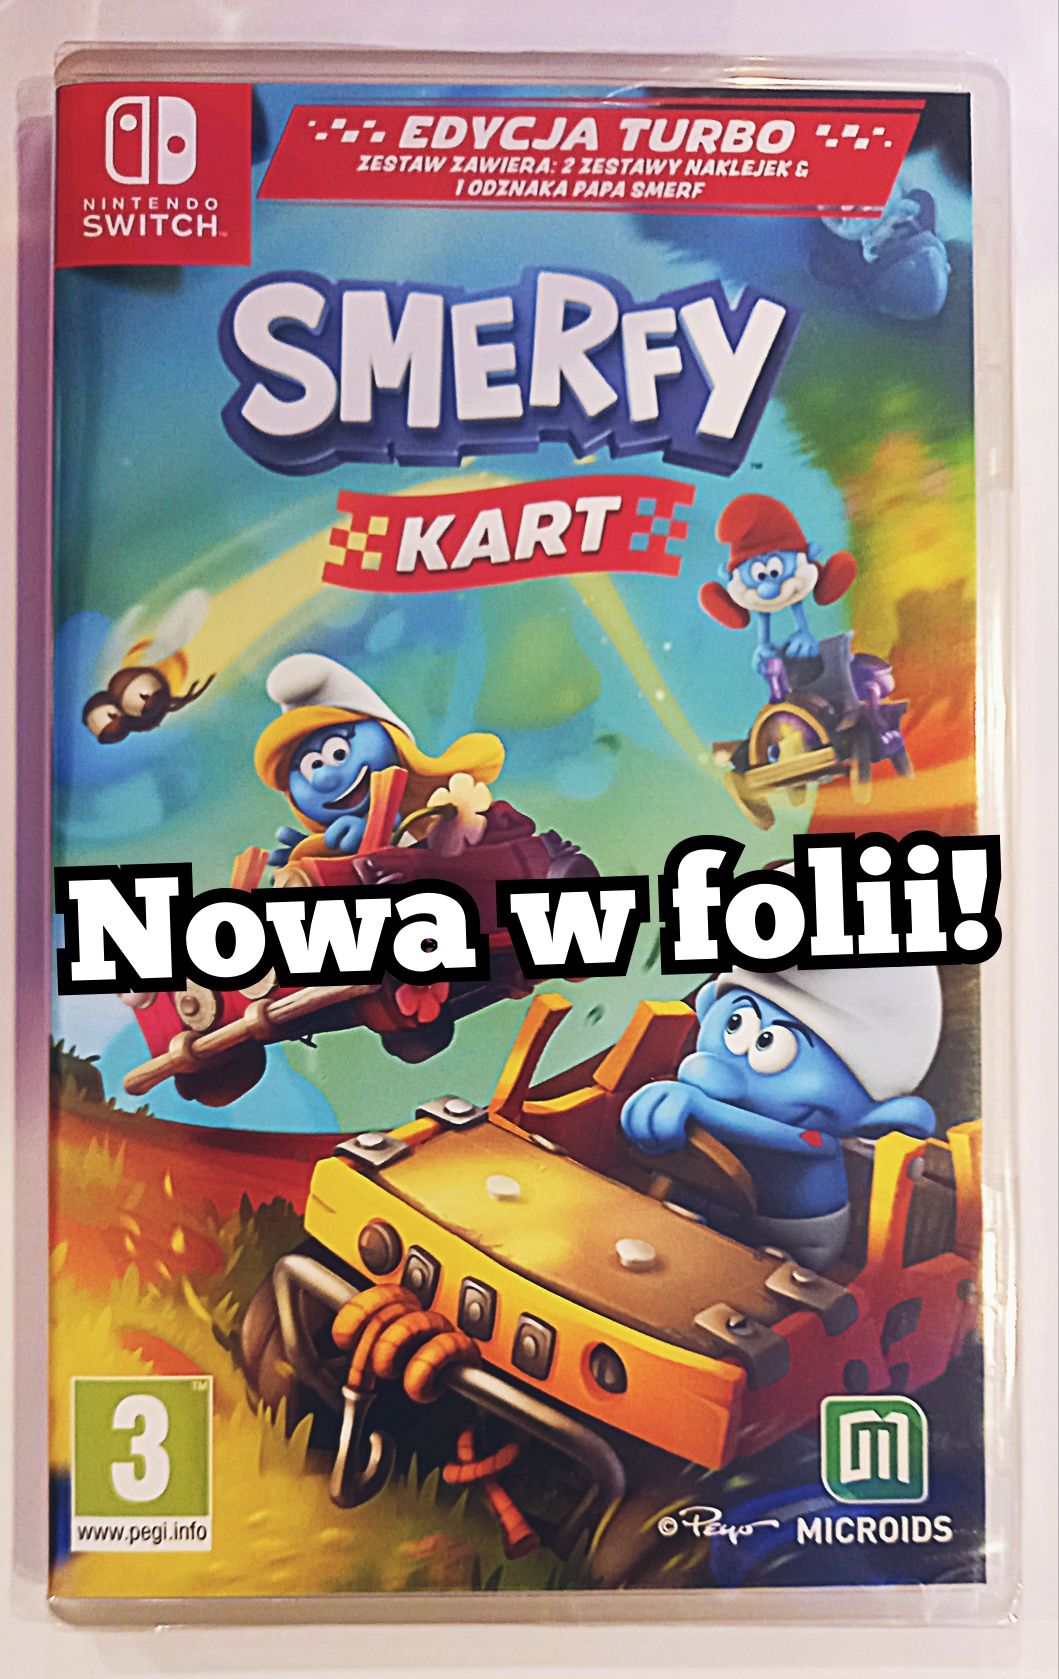 Smerfy Kart PL e. Turbo Nintendo Switch /nowa w folii! s. Chorzów